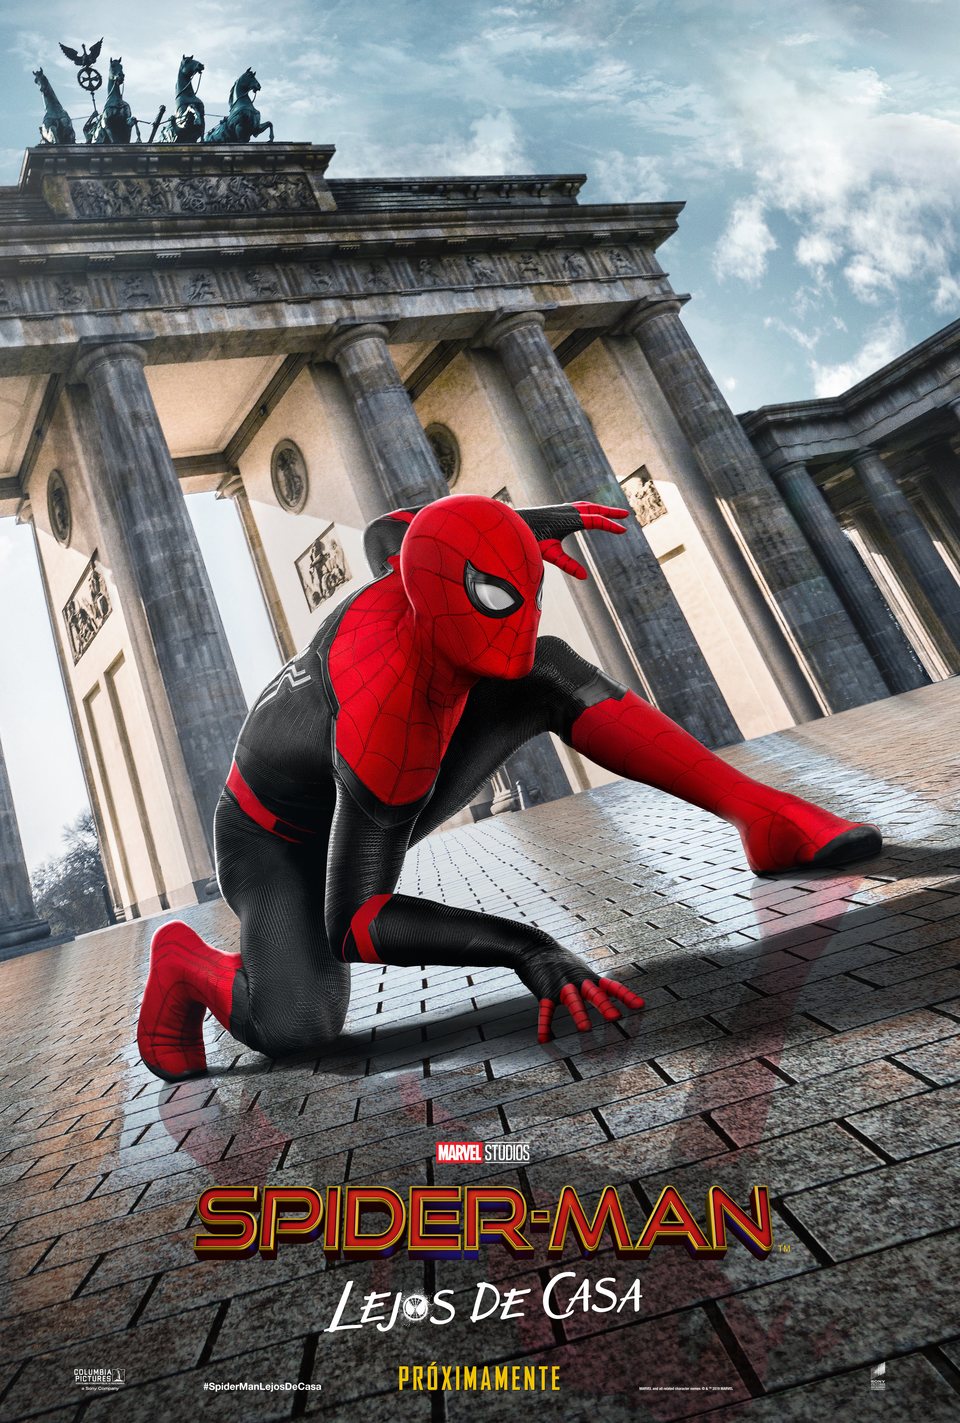 España #2 - Cartel de Spider-Man: Lejos de casa (2019) - eCartelera